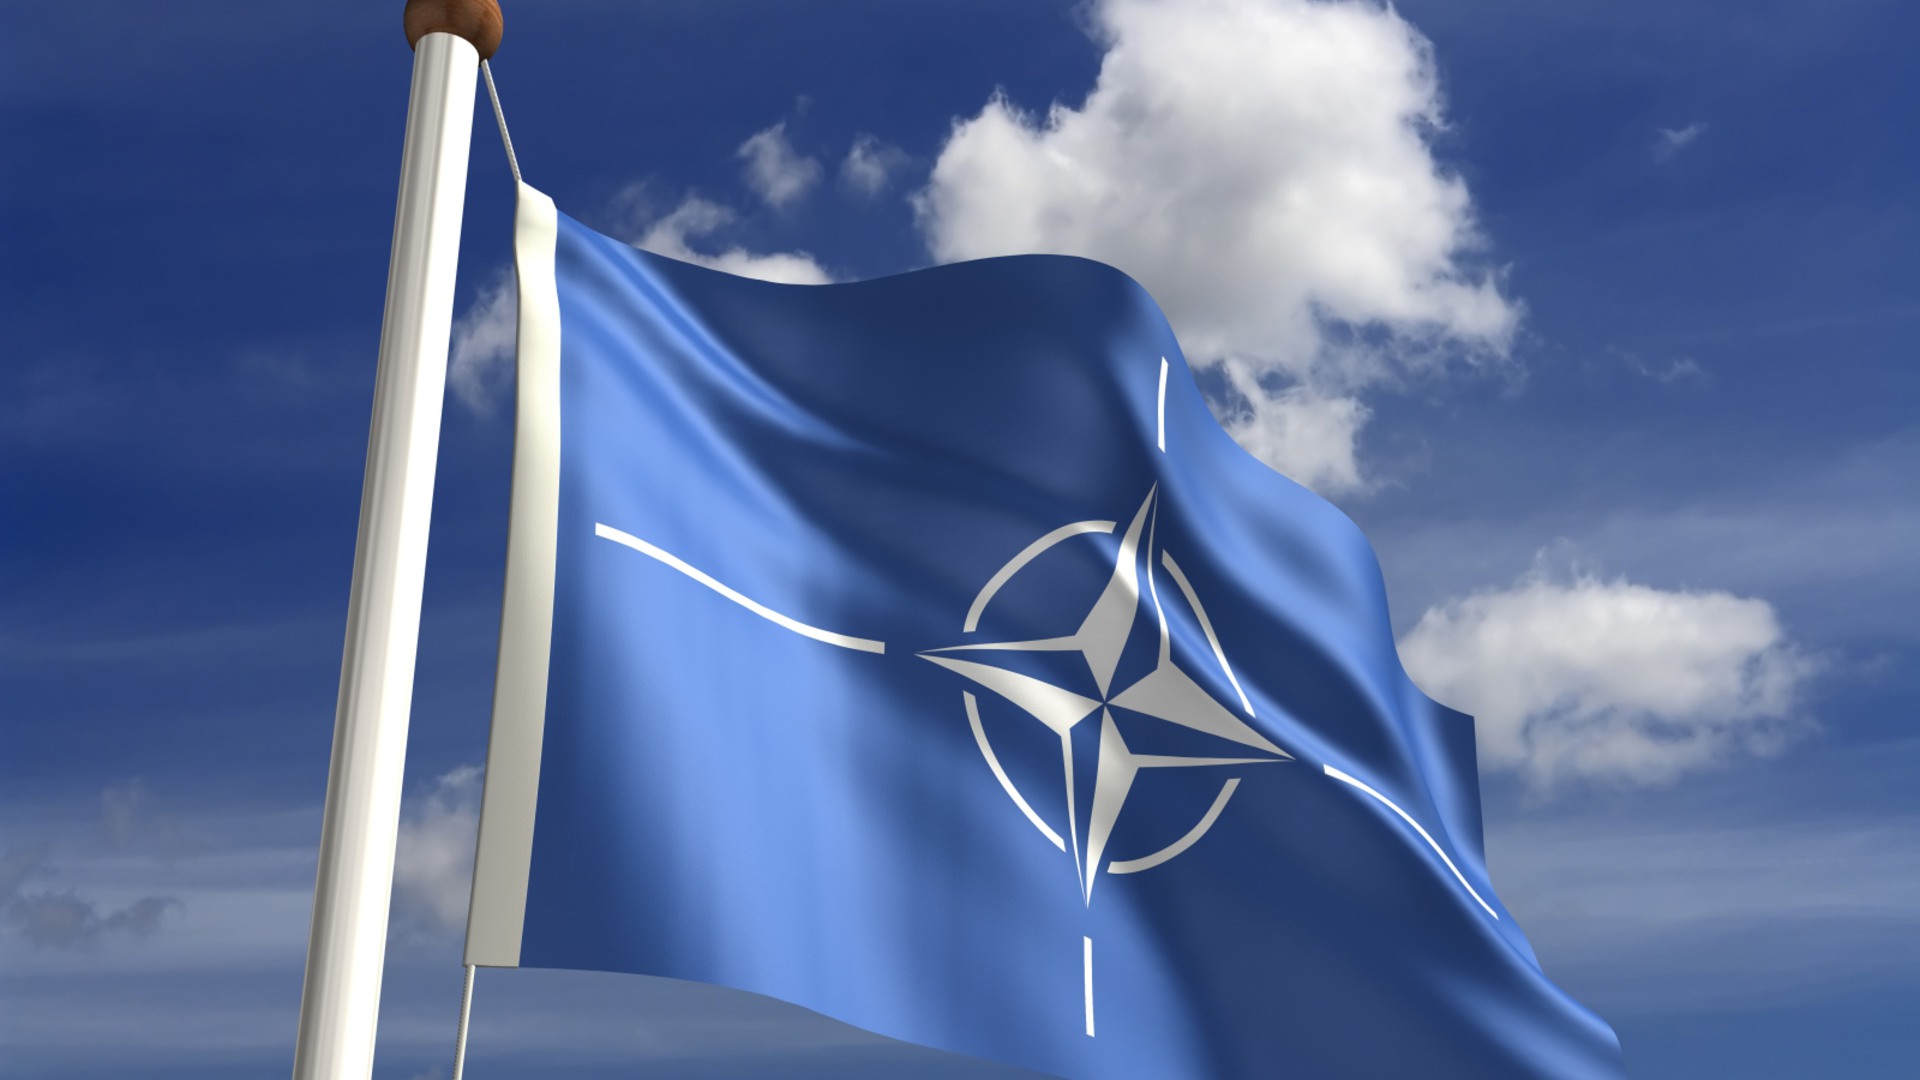 Natoflaggan vajar mot en blå himmel.